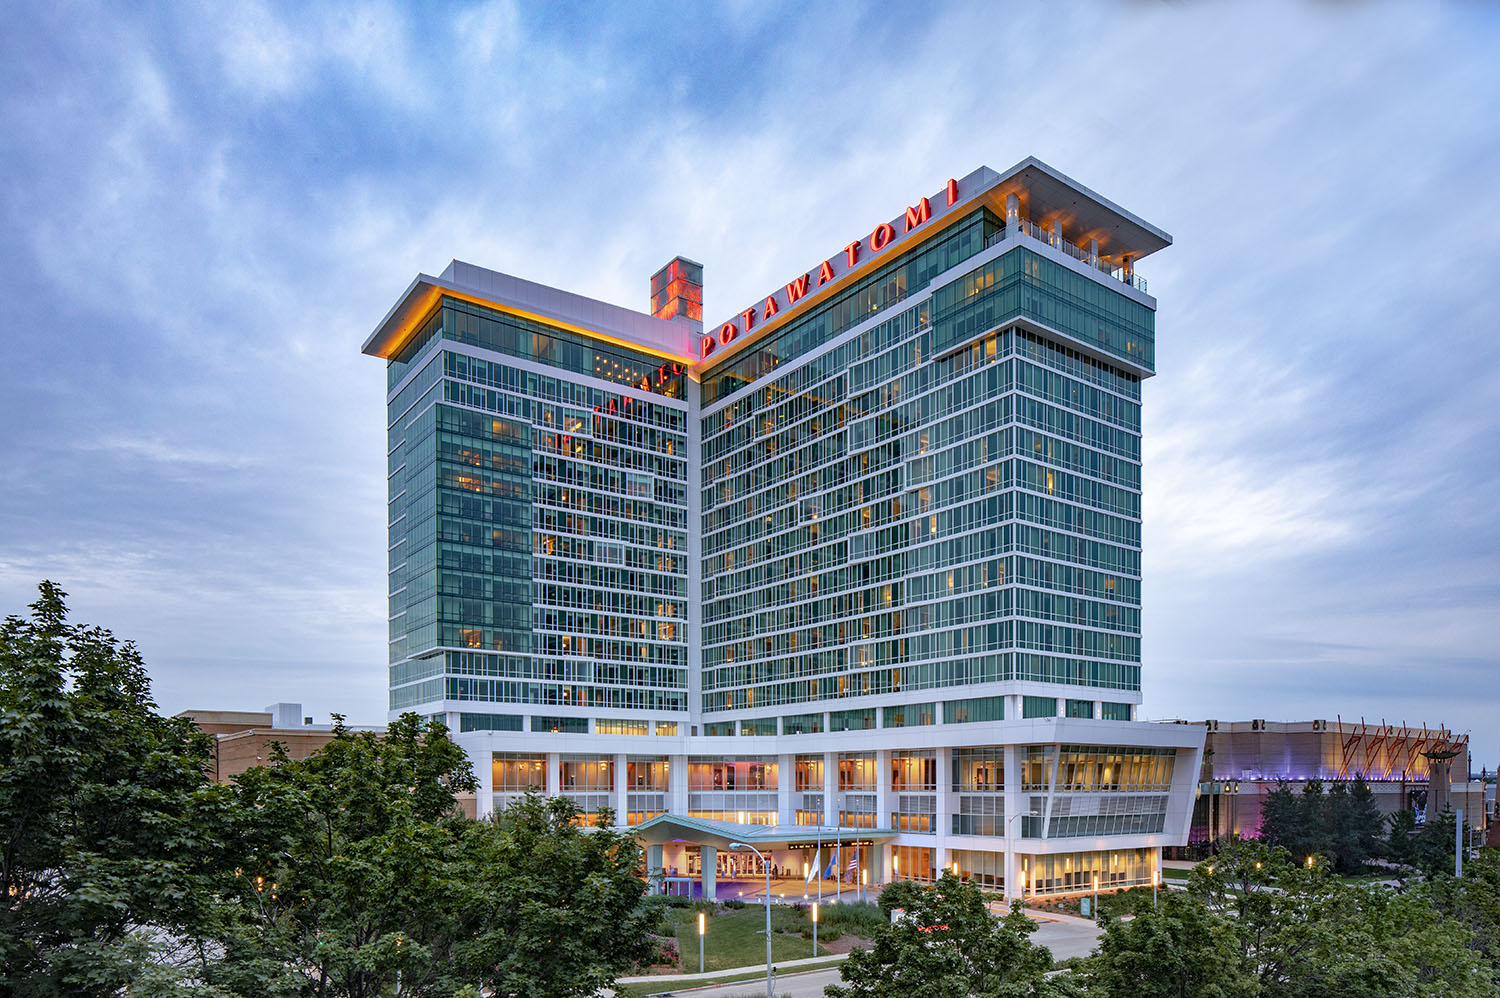 Potawatomi Hotel Expansion